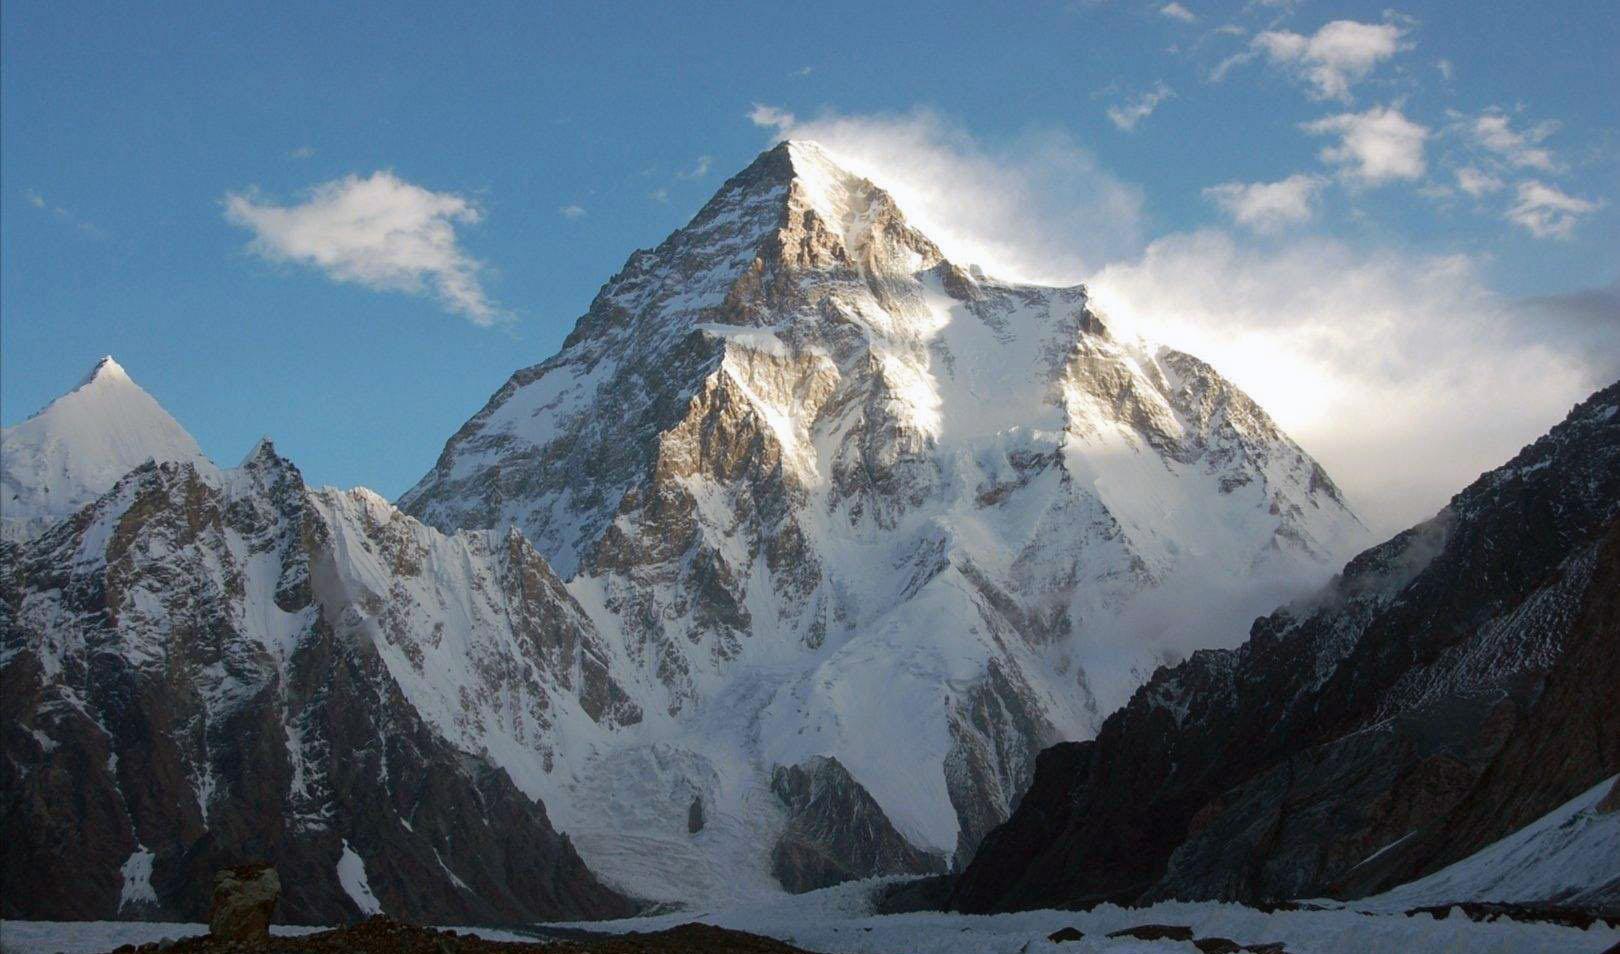 世界上第二高峰,仅次于珠穆朗玛峰,也在中国境内